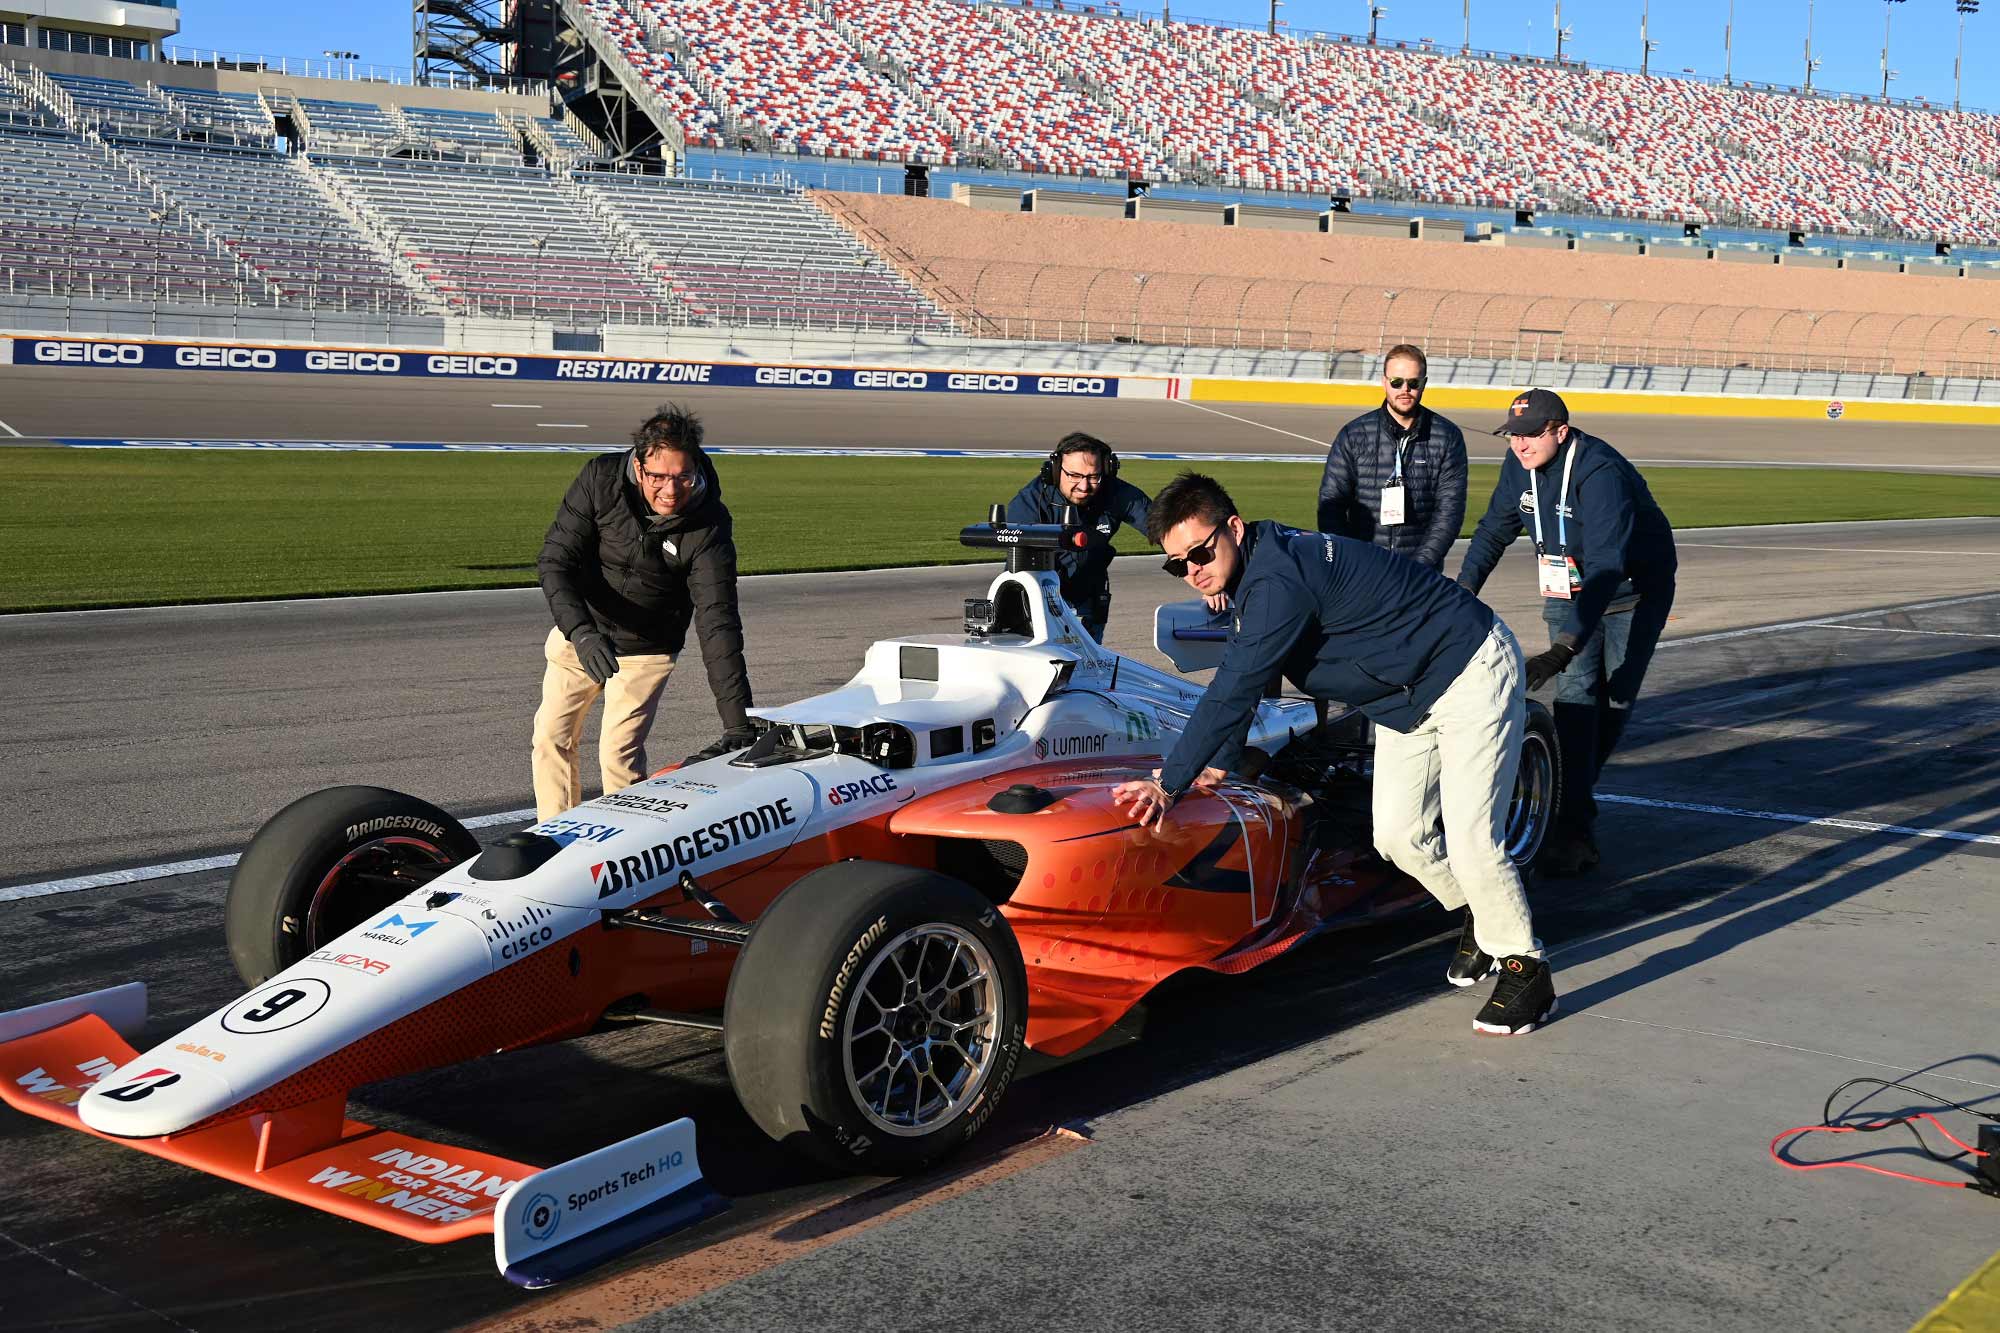 Team pushing Indy car